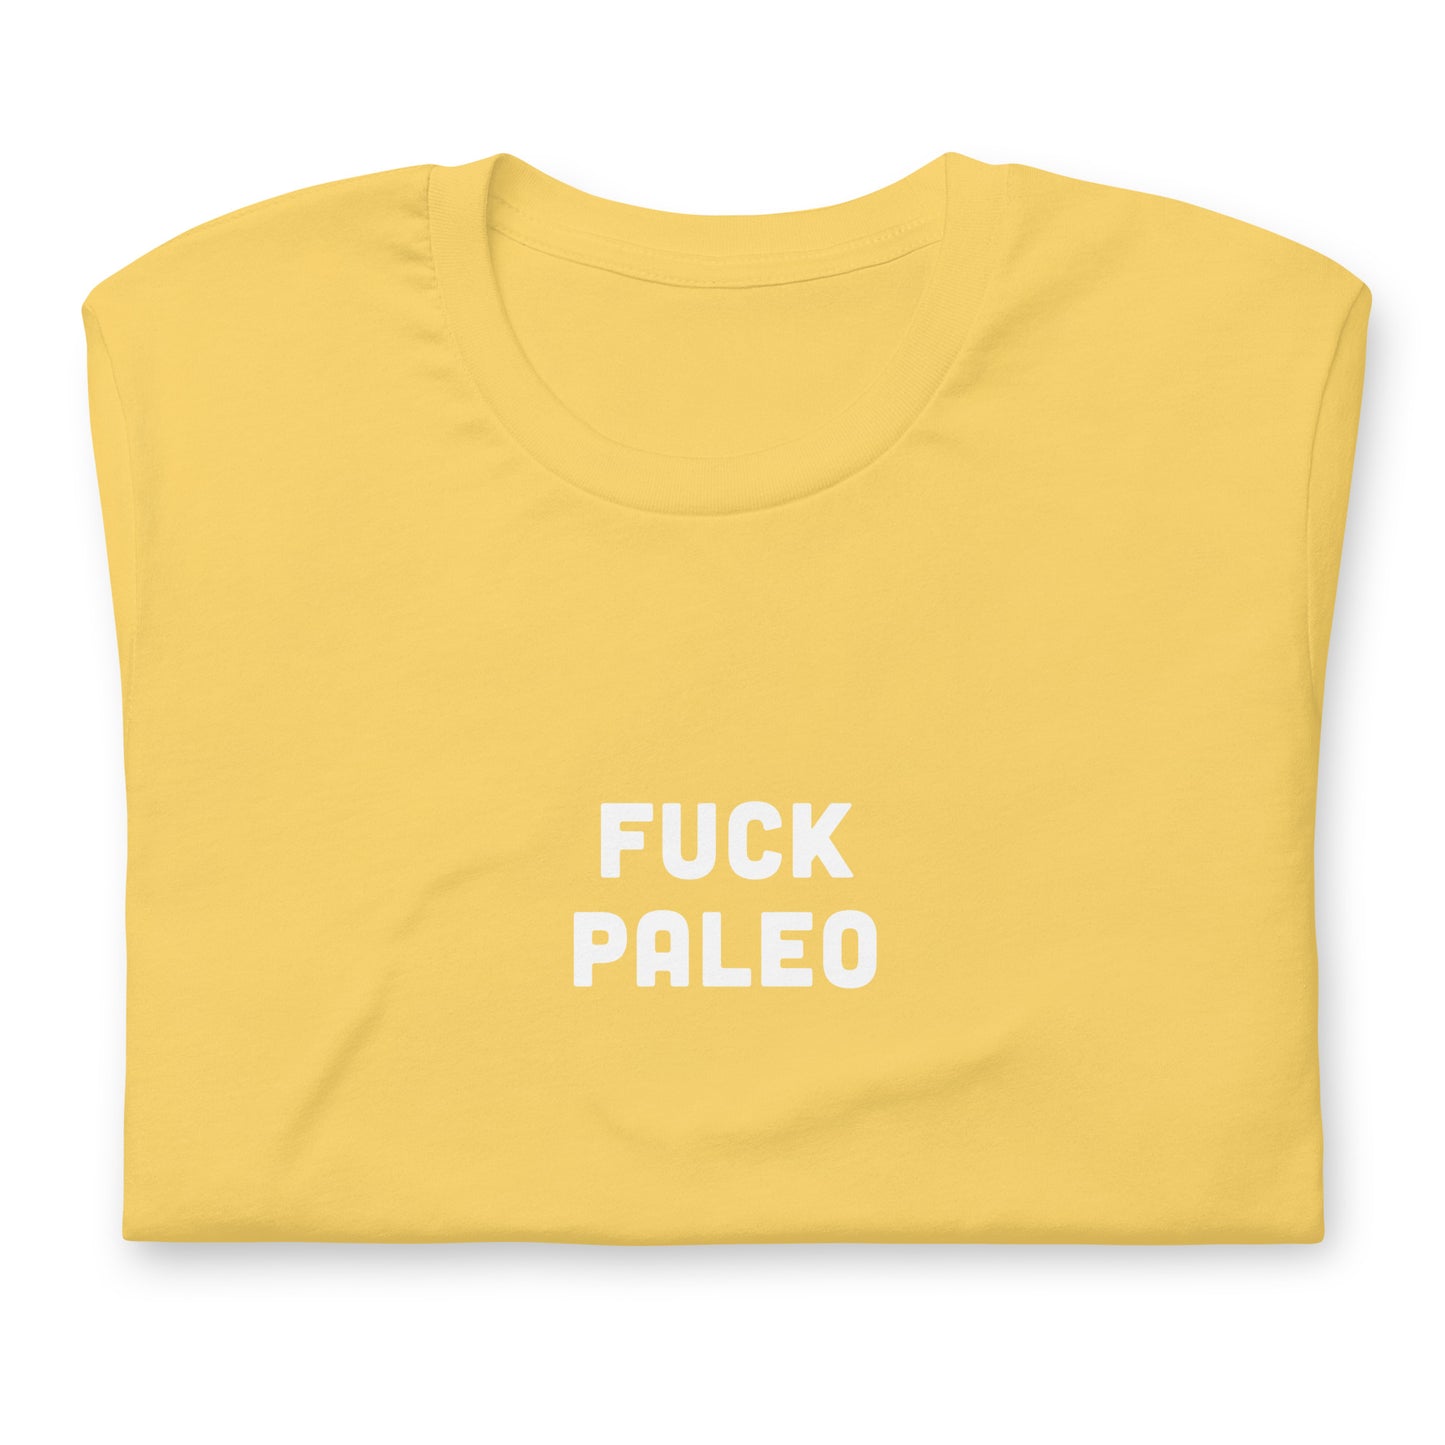 Fuck Paleo T-Shirt Size 2XL Color Asphalt